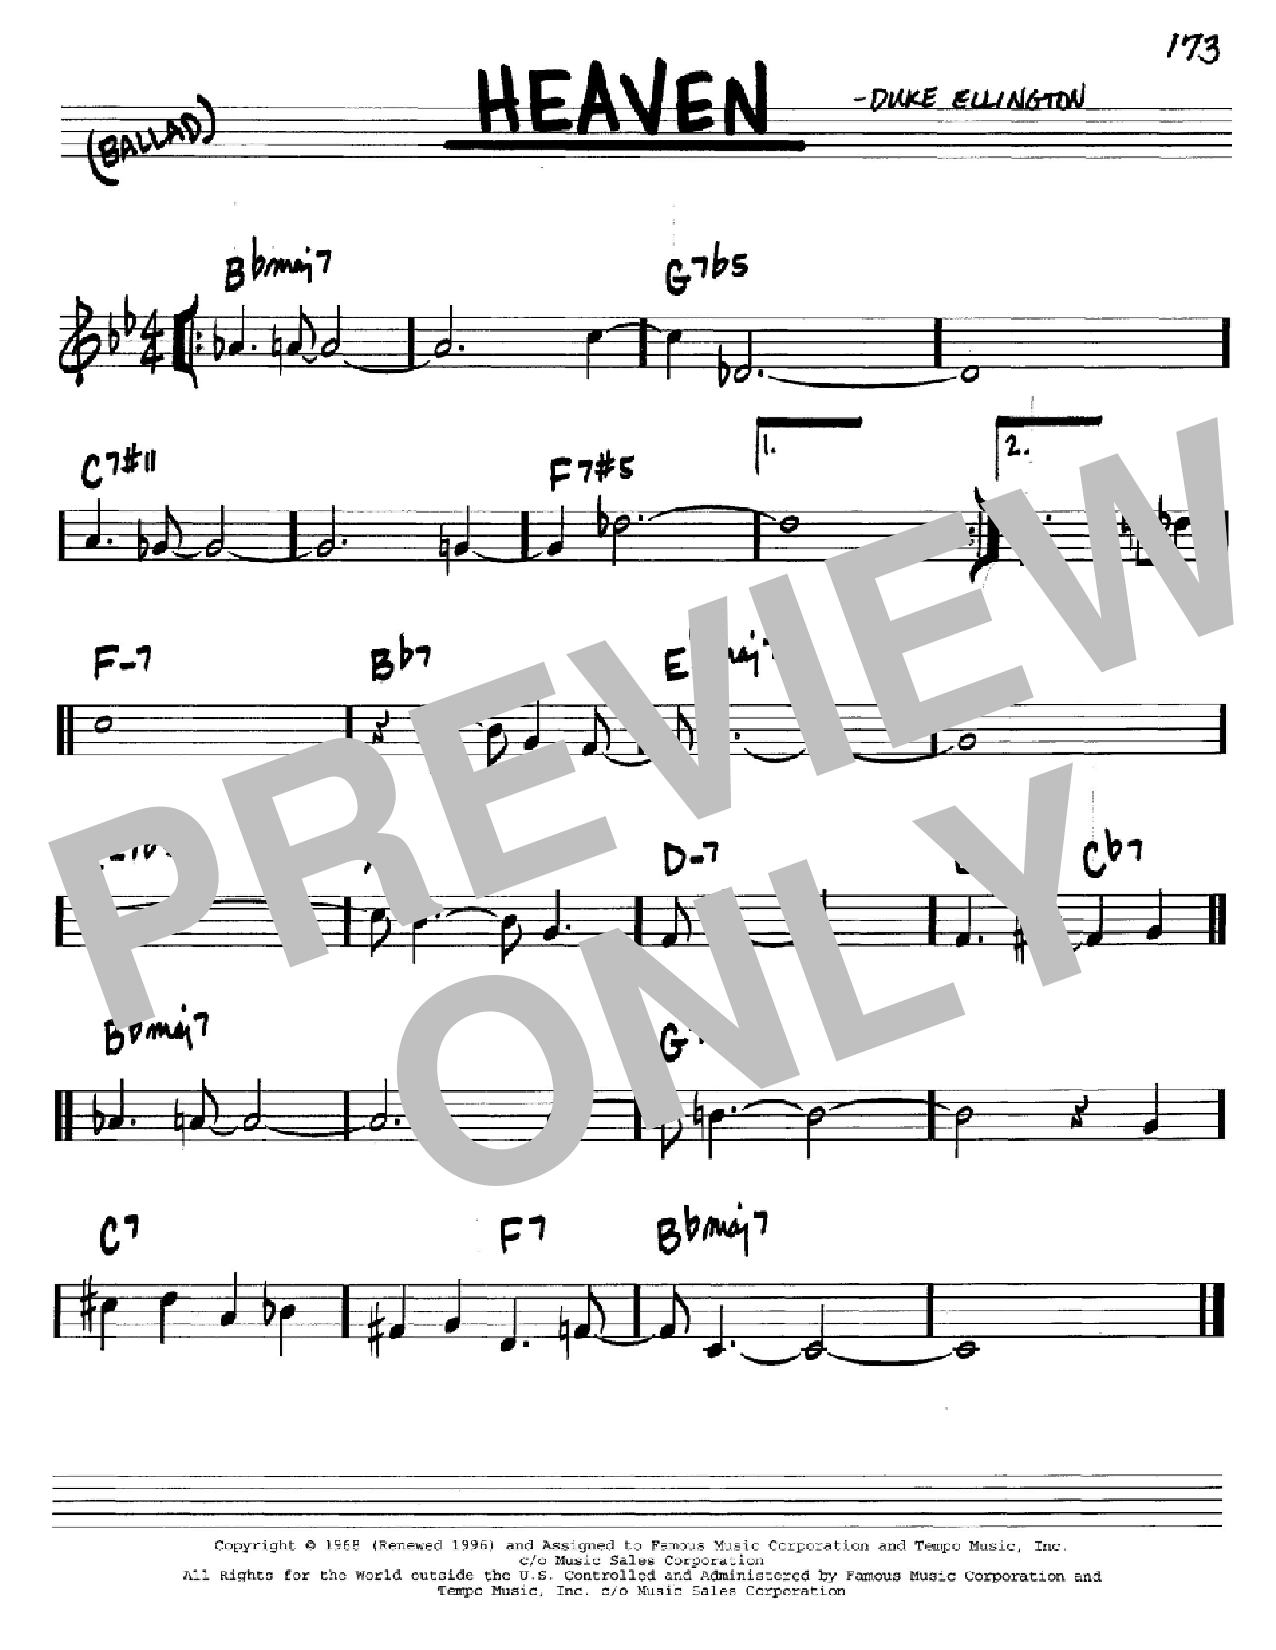 Download Duke Ellington Heaven Sheet Music